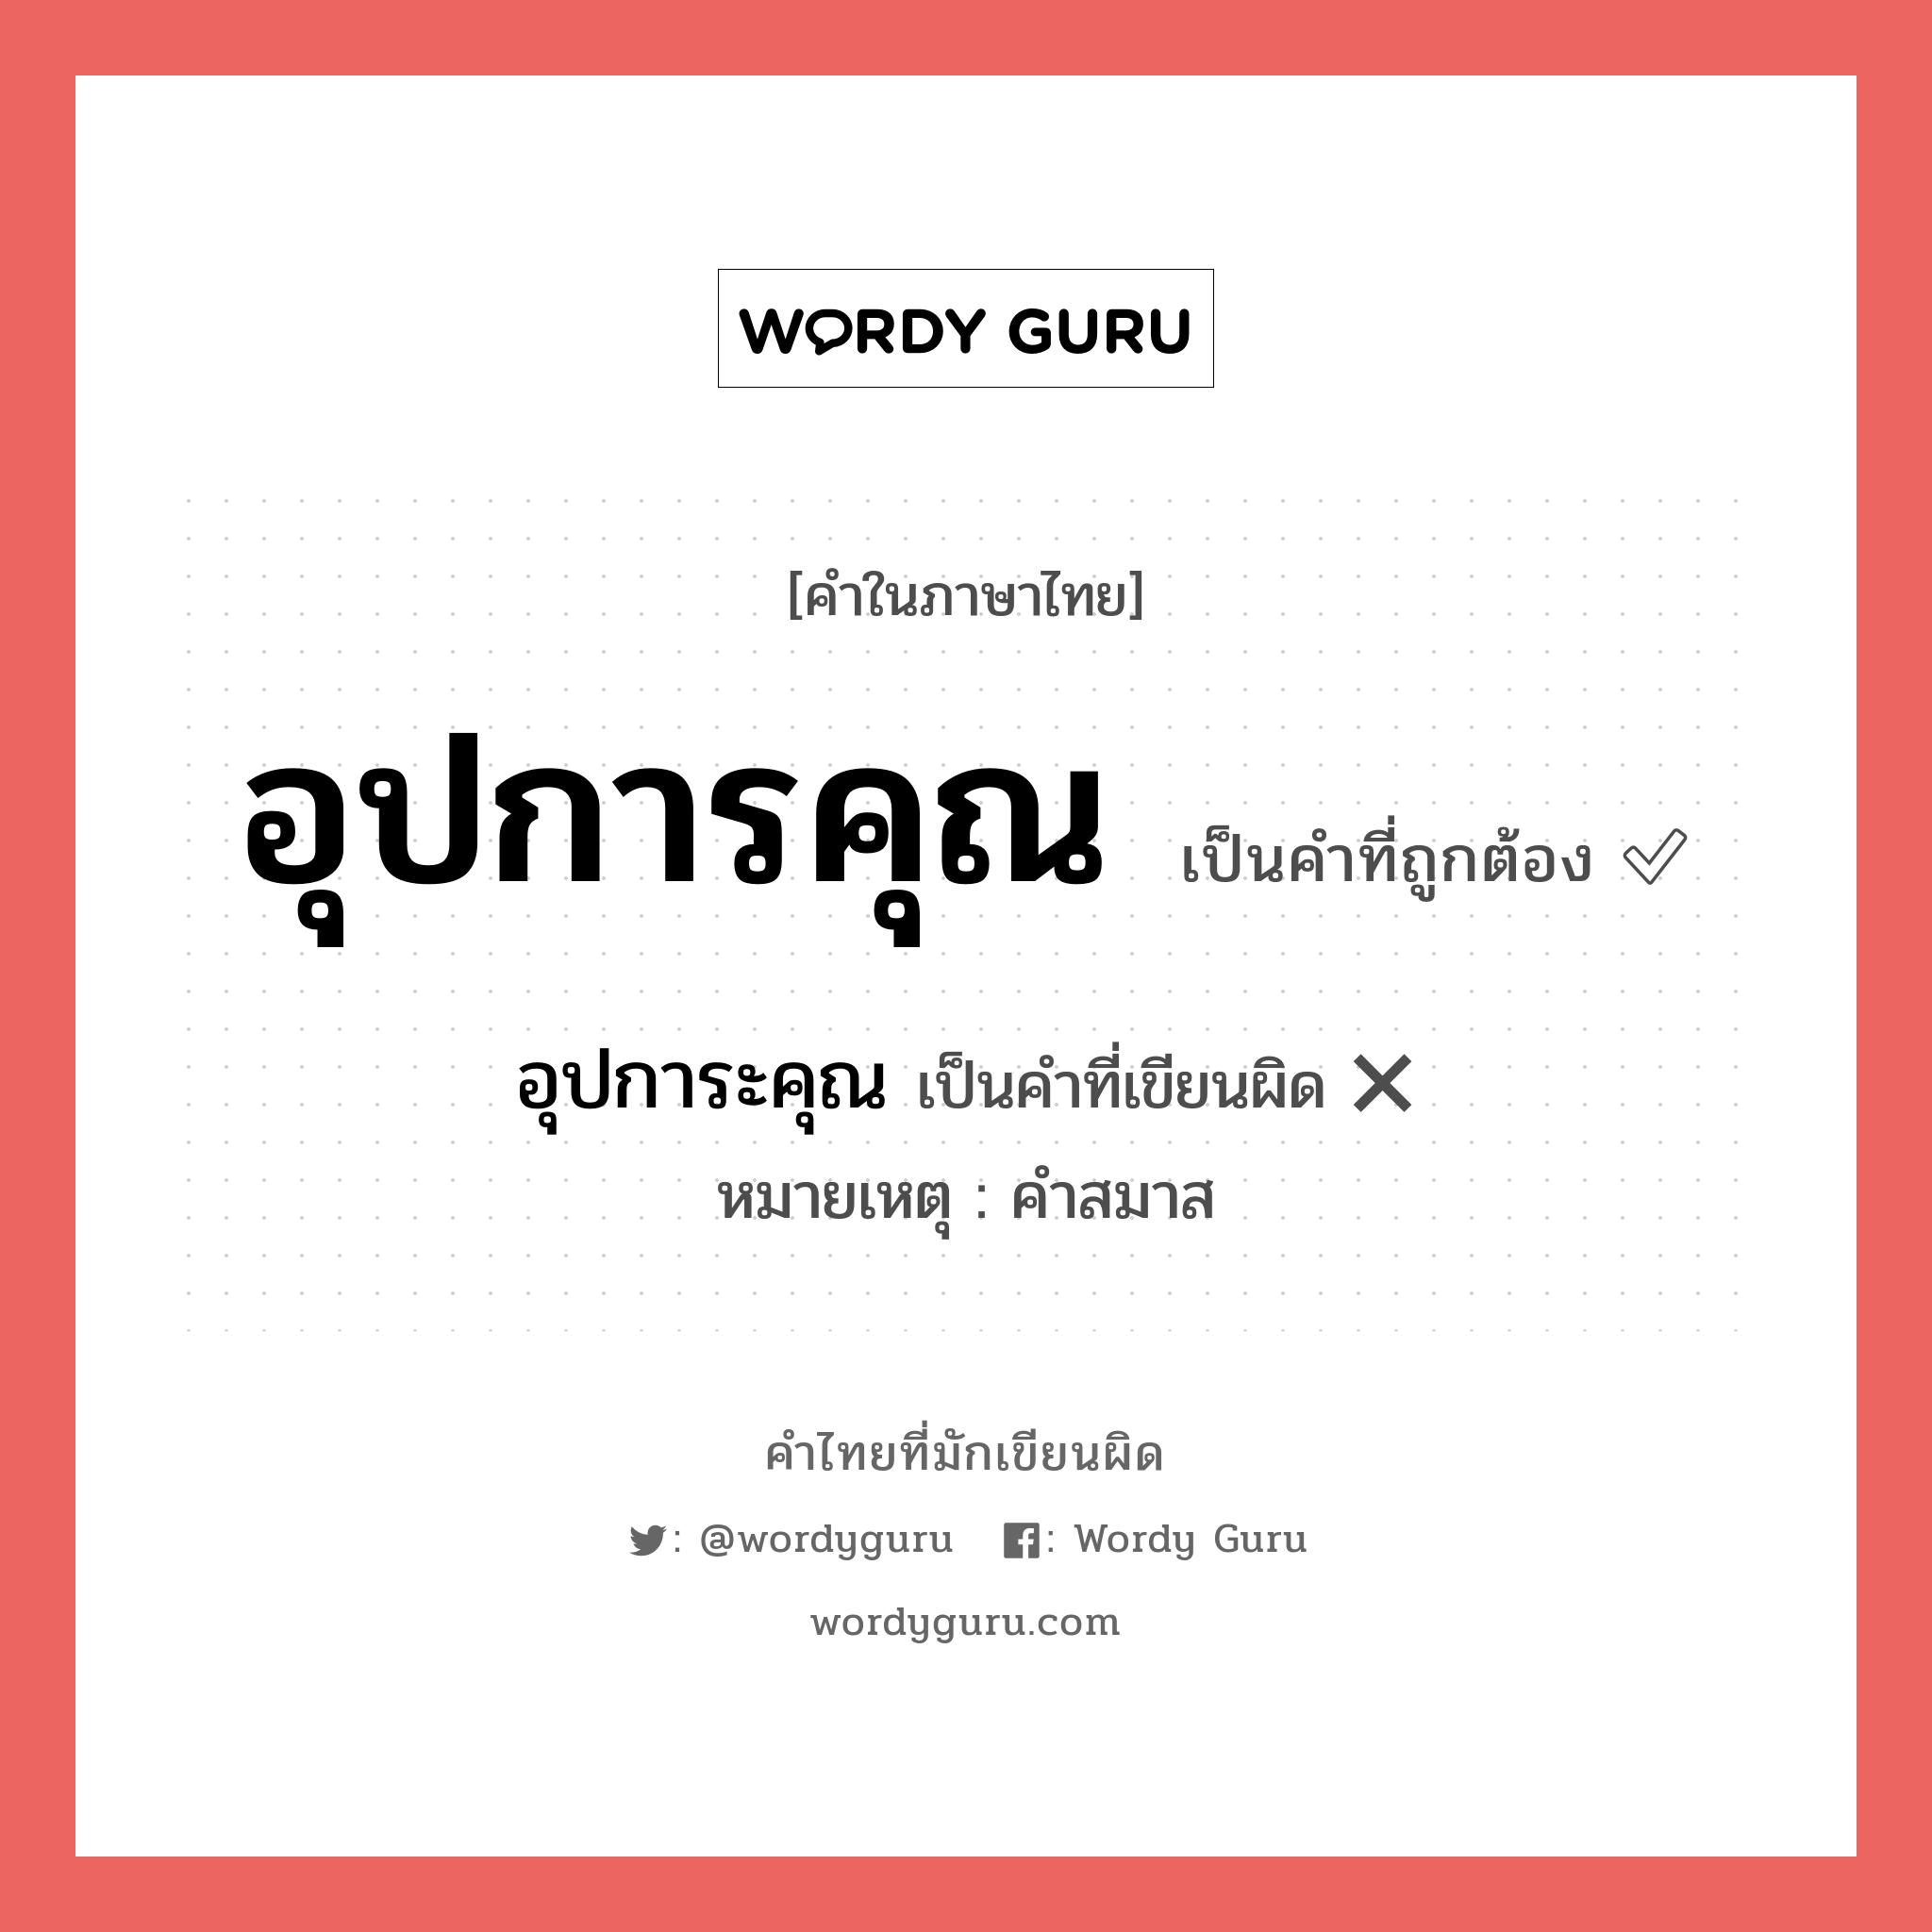 อุปการะคุณ หรือ อุปการคุณ คำไหนเขียนถูก?, คำในภาษาไทยที่มักเขียนผิด อุปการะคุณ คำที่ผิด ❌ อุปการคุณ หมายเหตุ คำสมาส